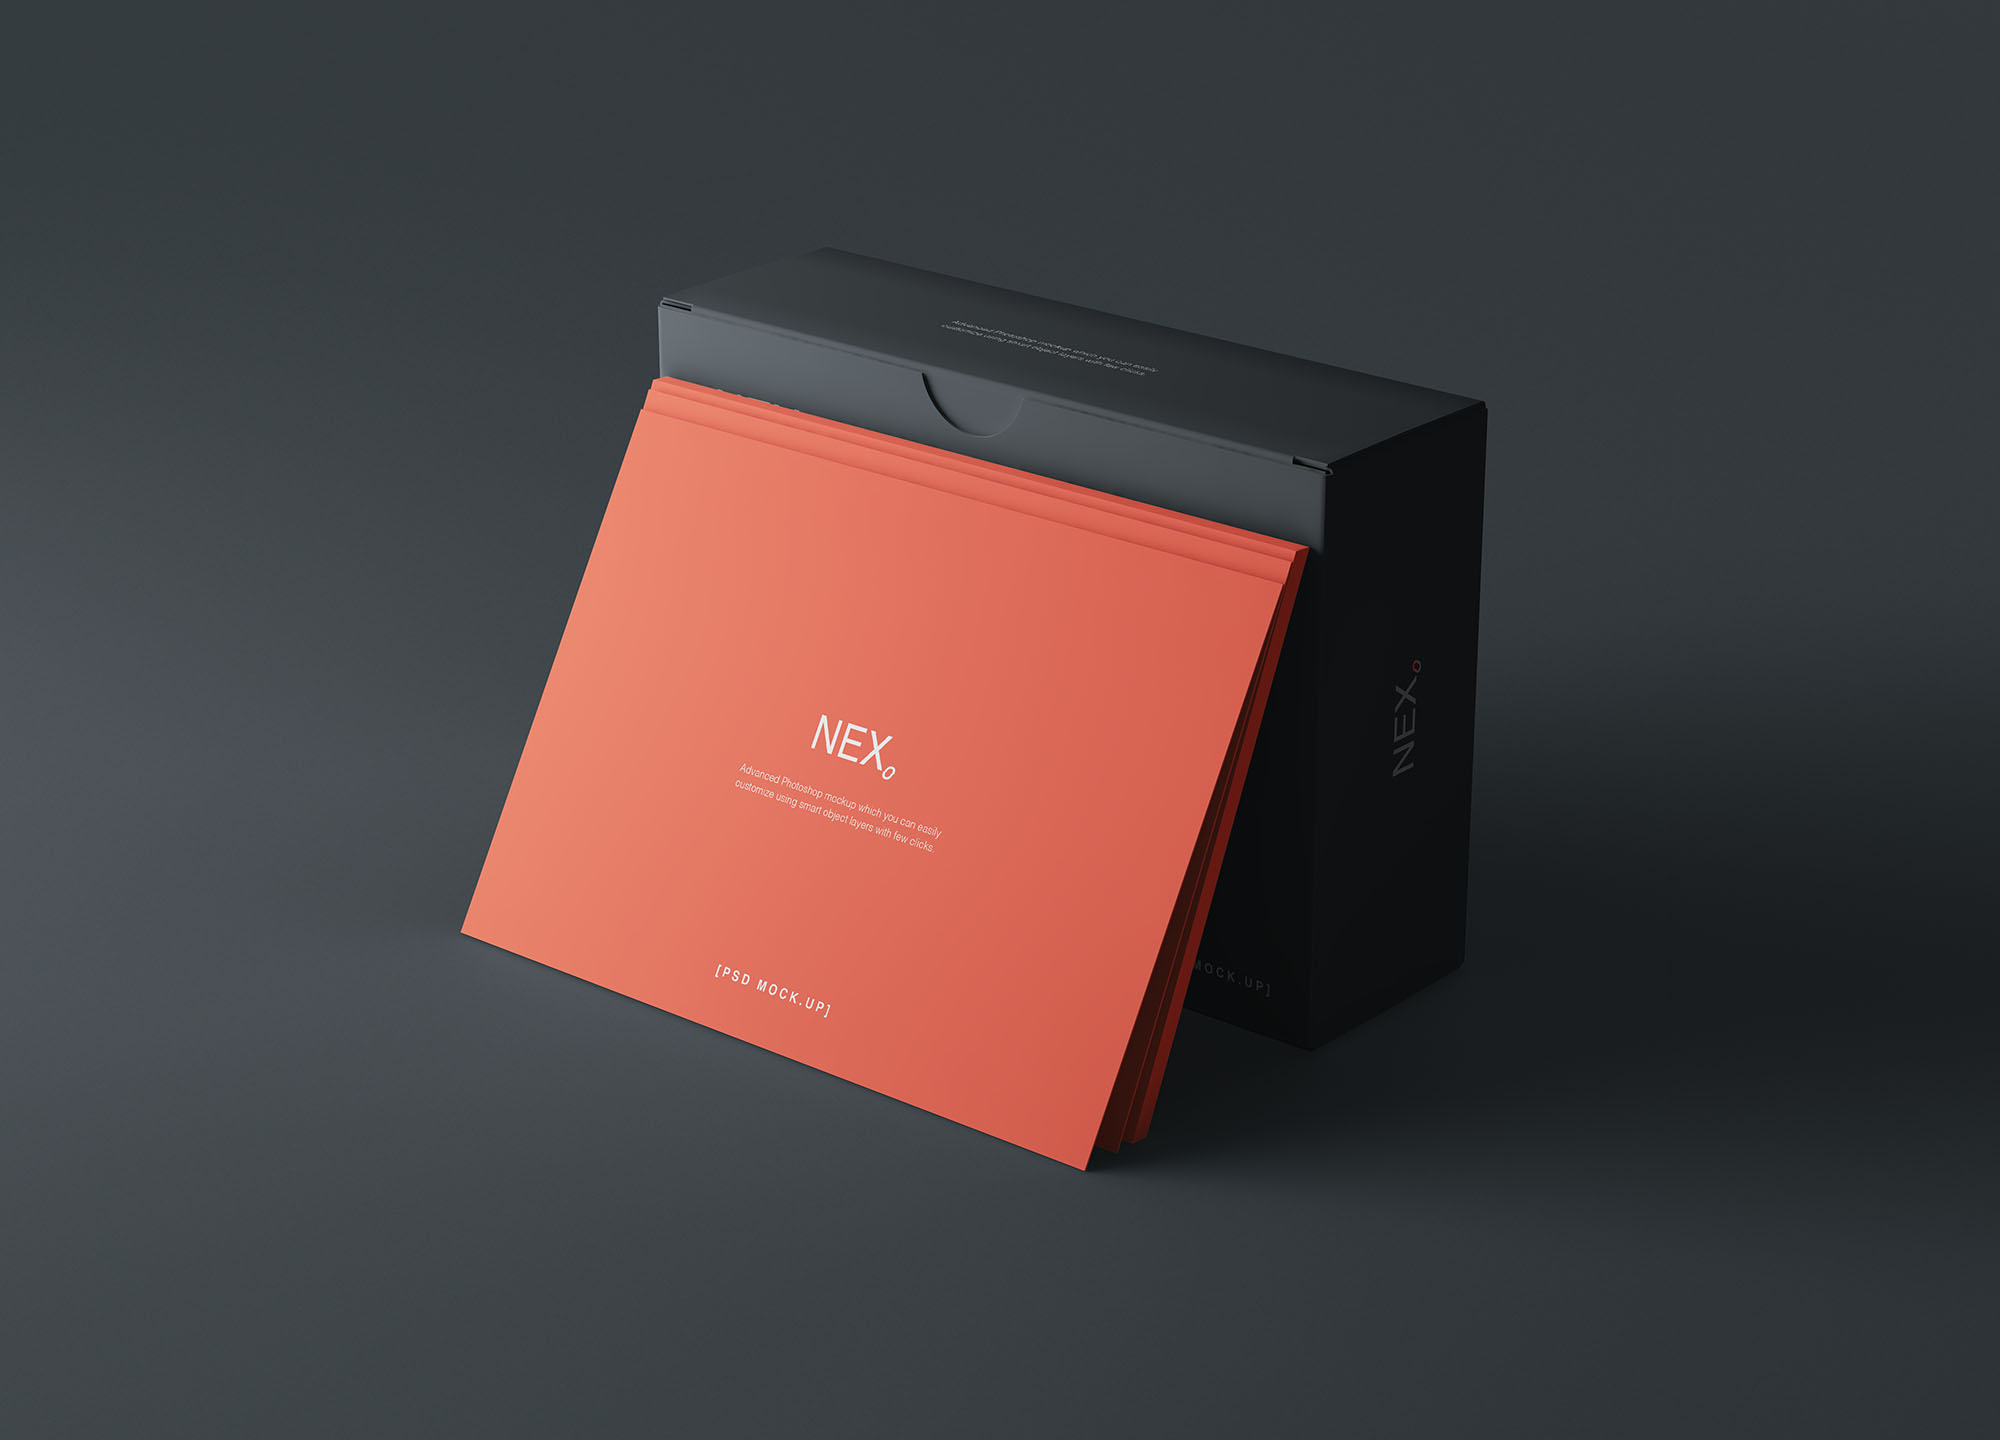 卡片包装盒外观设计效果图16图库精选 Card Box Mockup插图(3)